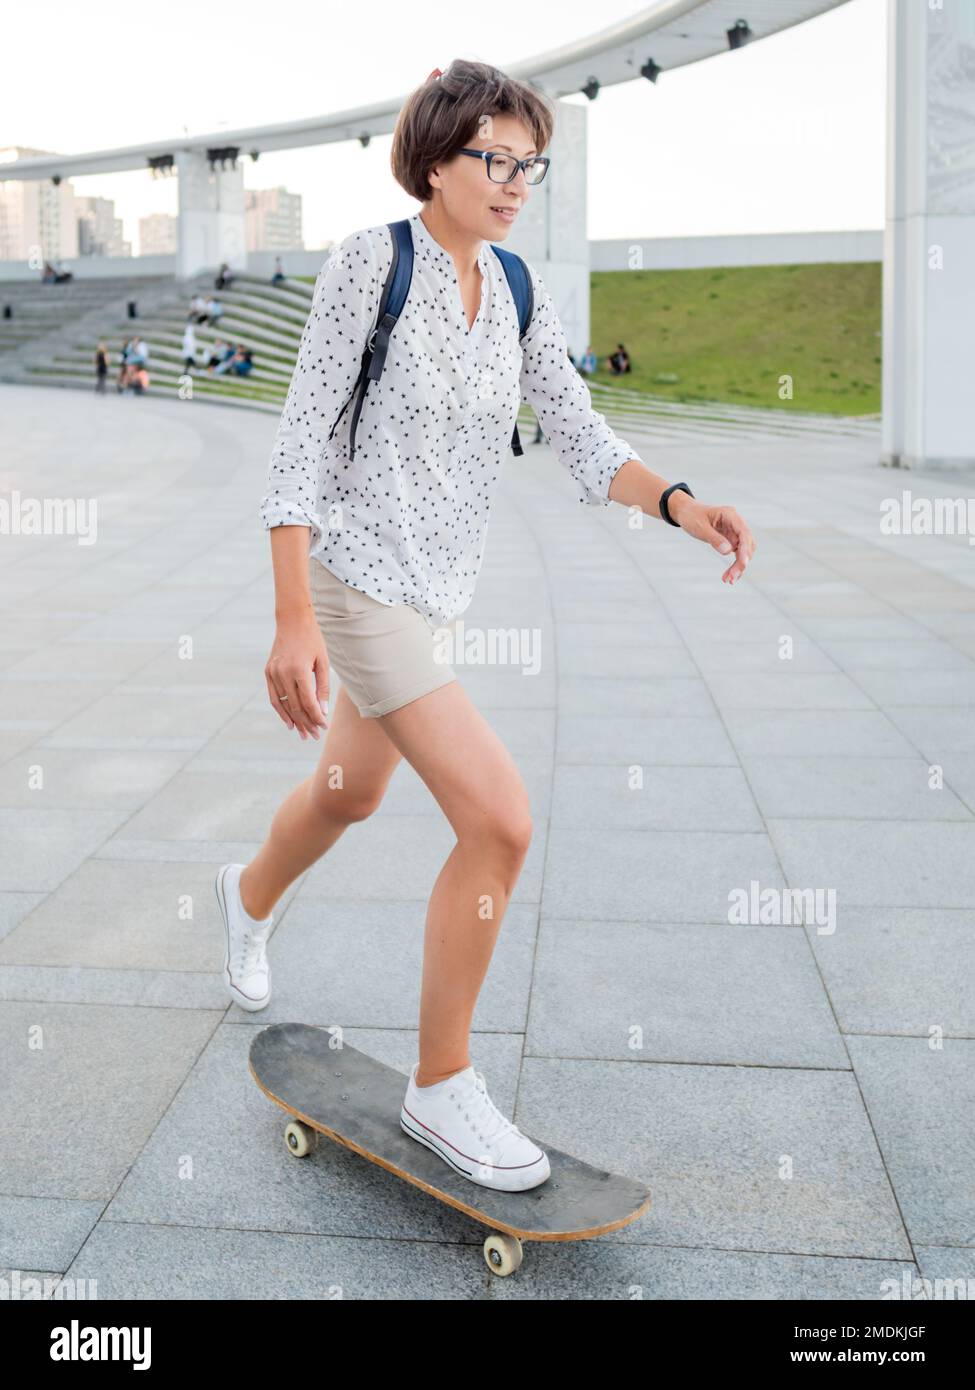 Frau fährt Skateboard auf dem Stadtplatz bei Sonnenuntergang. Sommerliche Stimmung. Neue Dinge im Erwachsenenalter lernen. Millennial lernt Skaten. Gesunder Lebensstil. Stockfoto